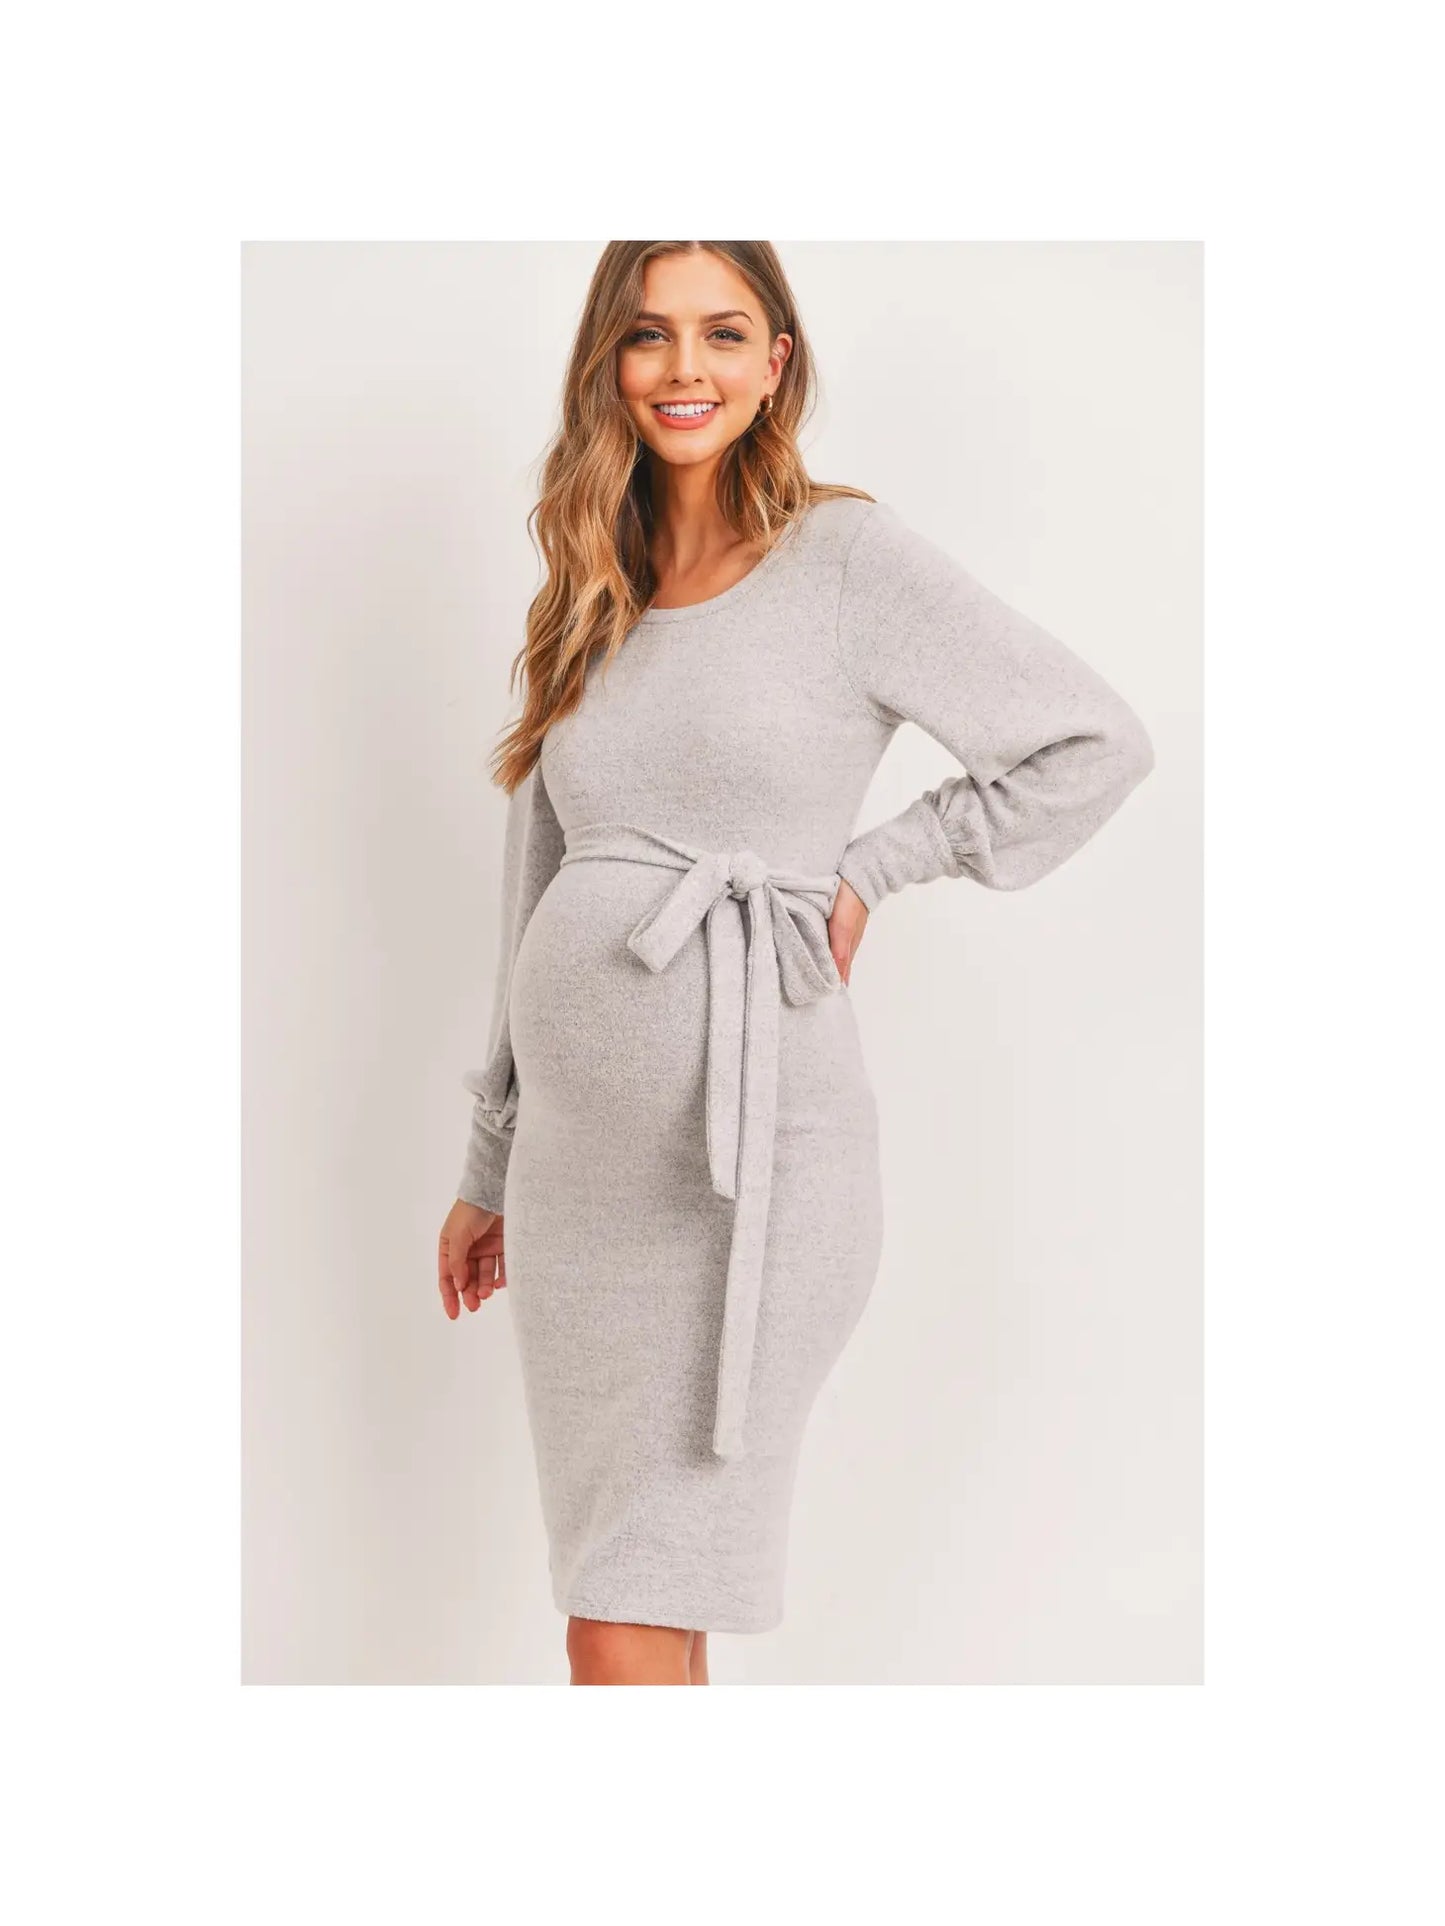 Blush Cashmere-Like Sweater Knit Maternity Dress